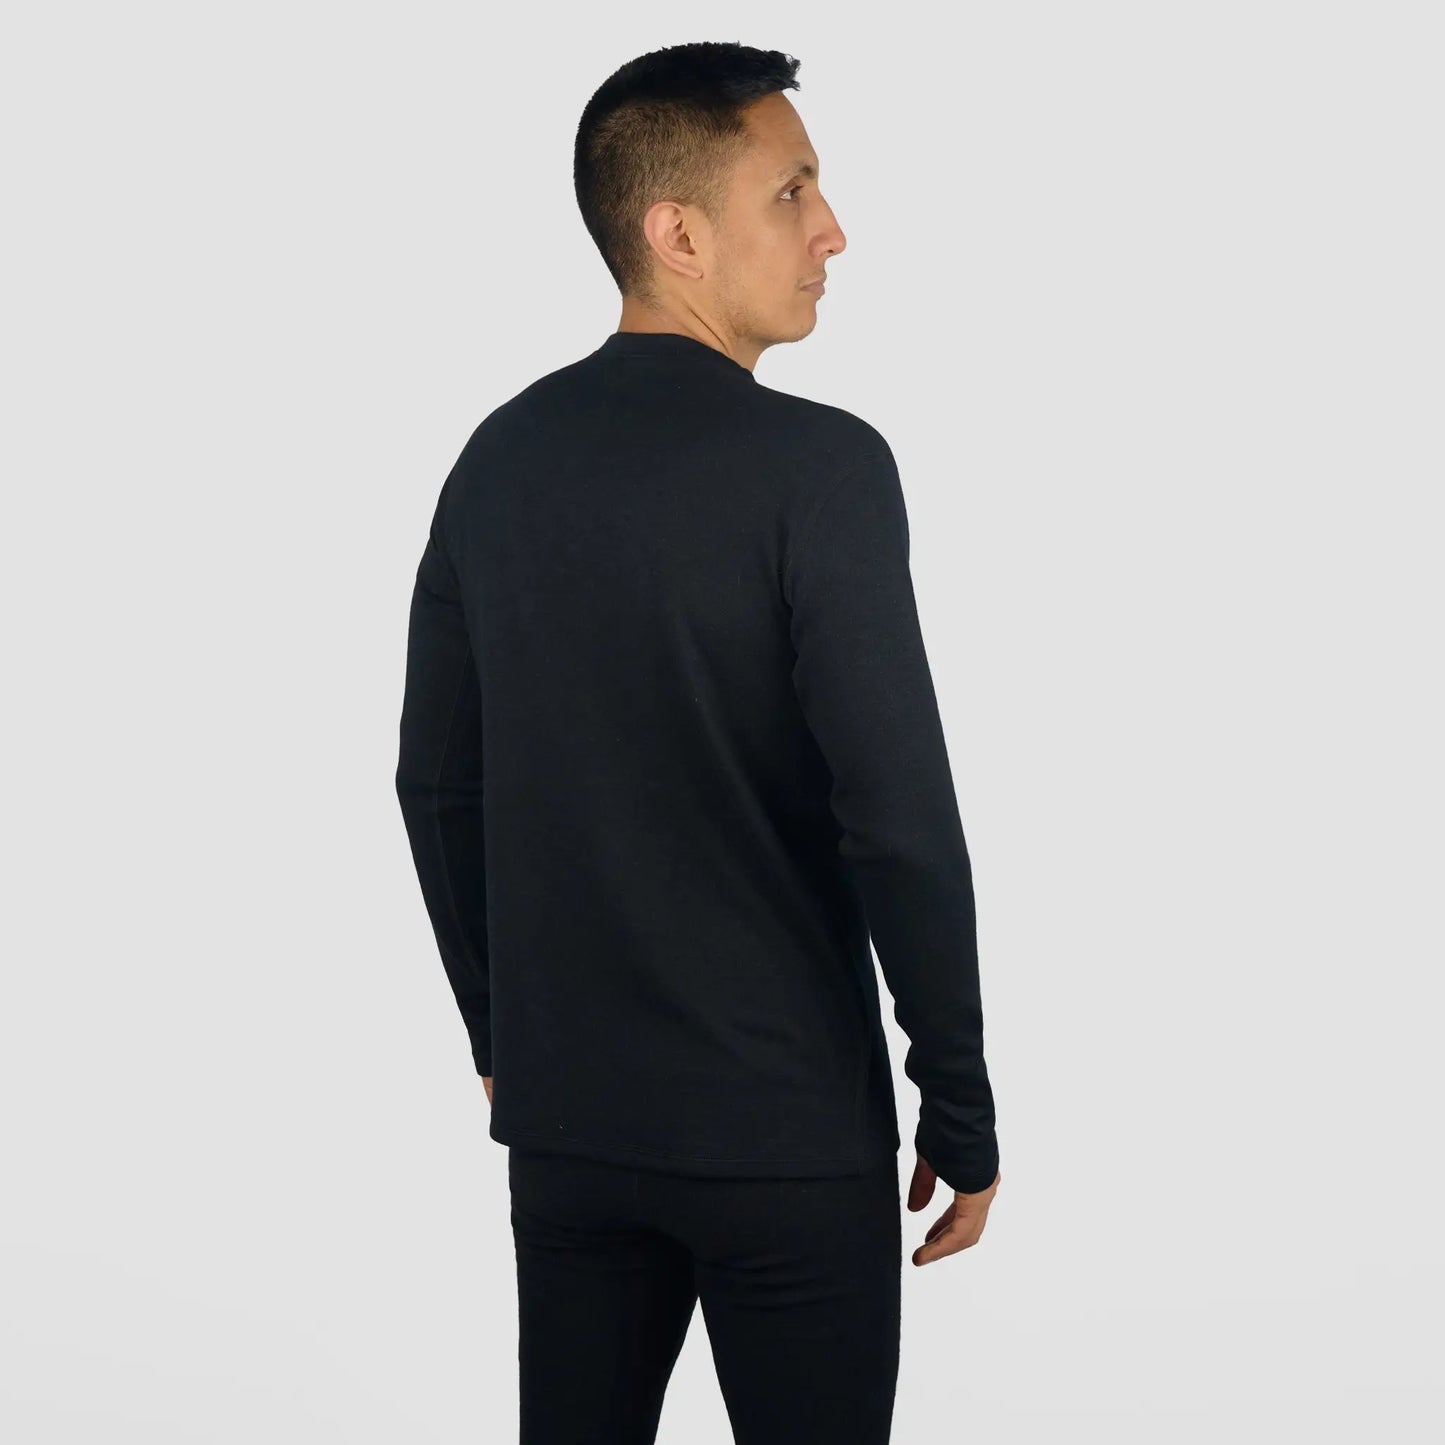 mens alpaca sweater single origin lightweight color black